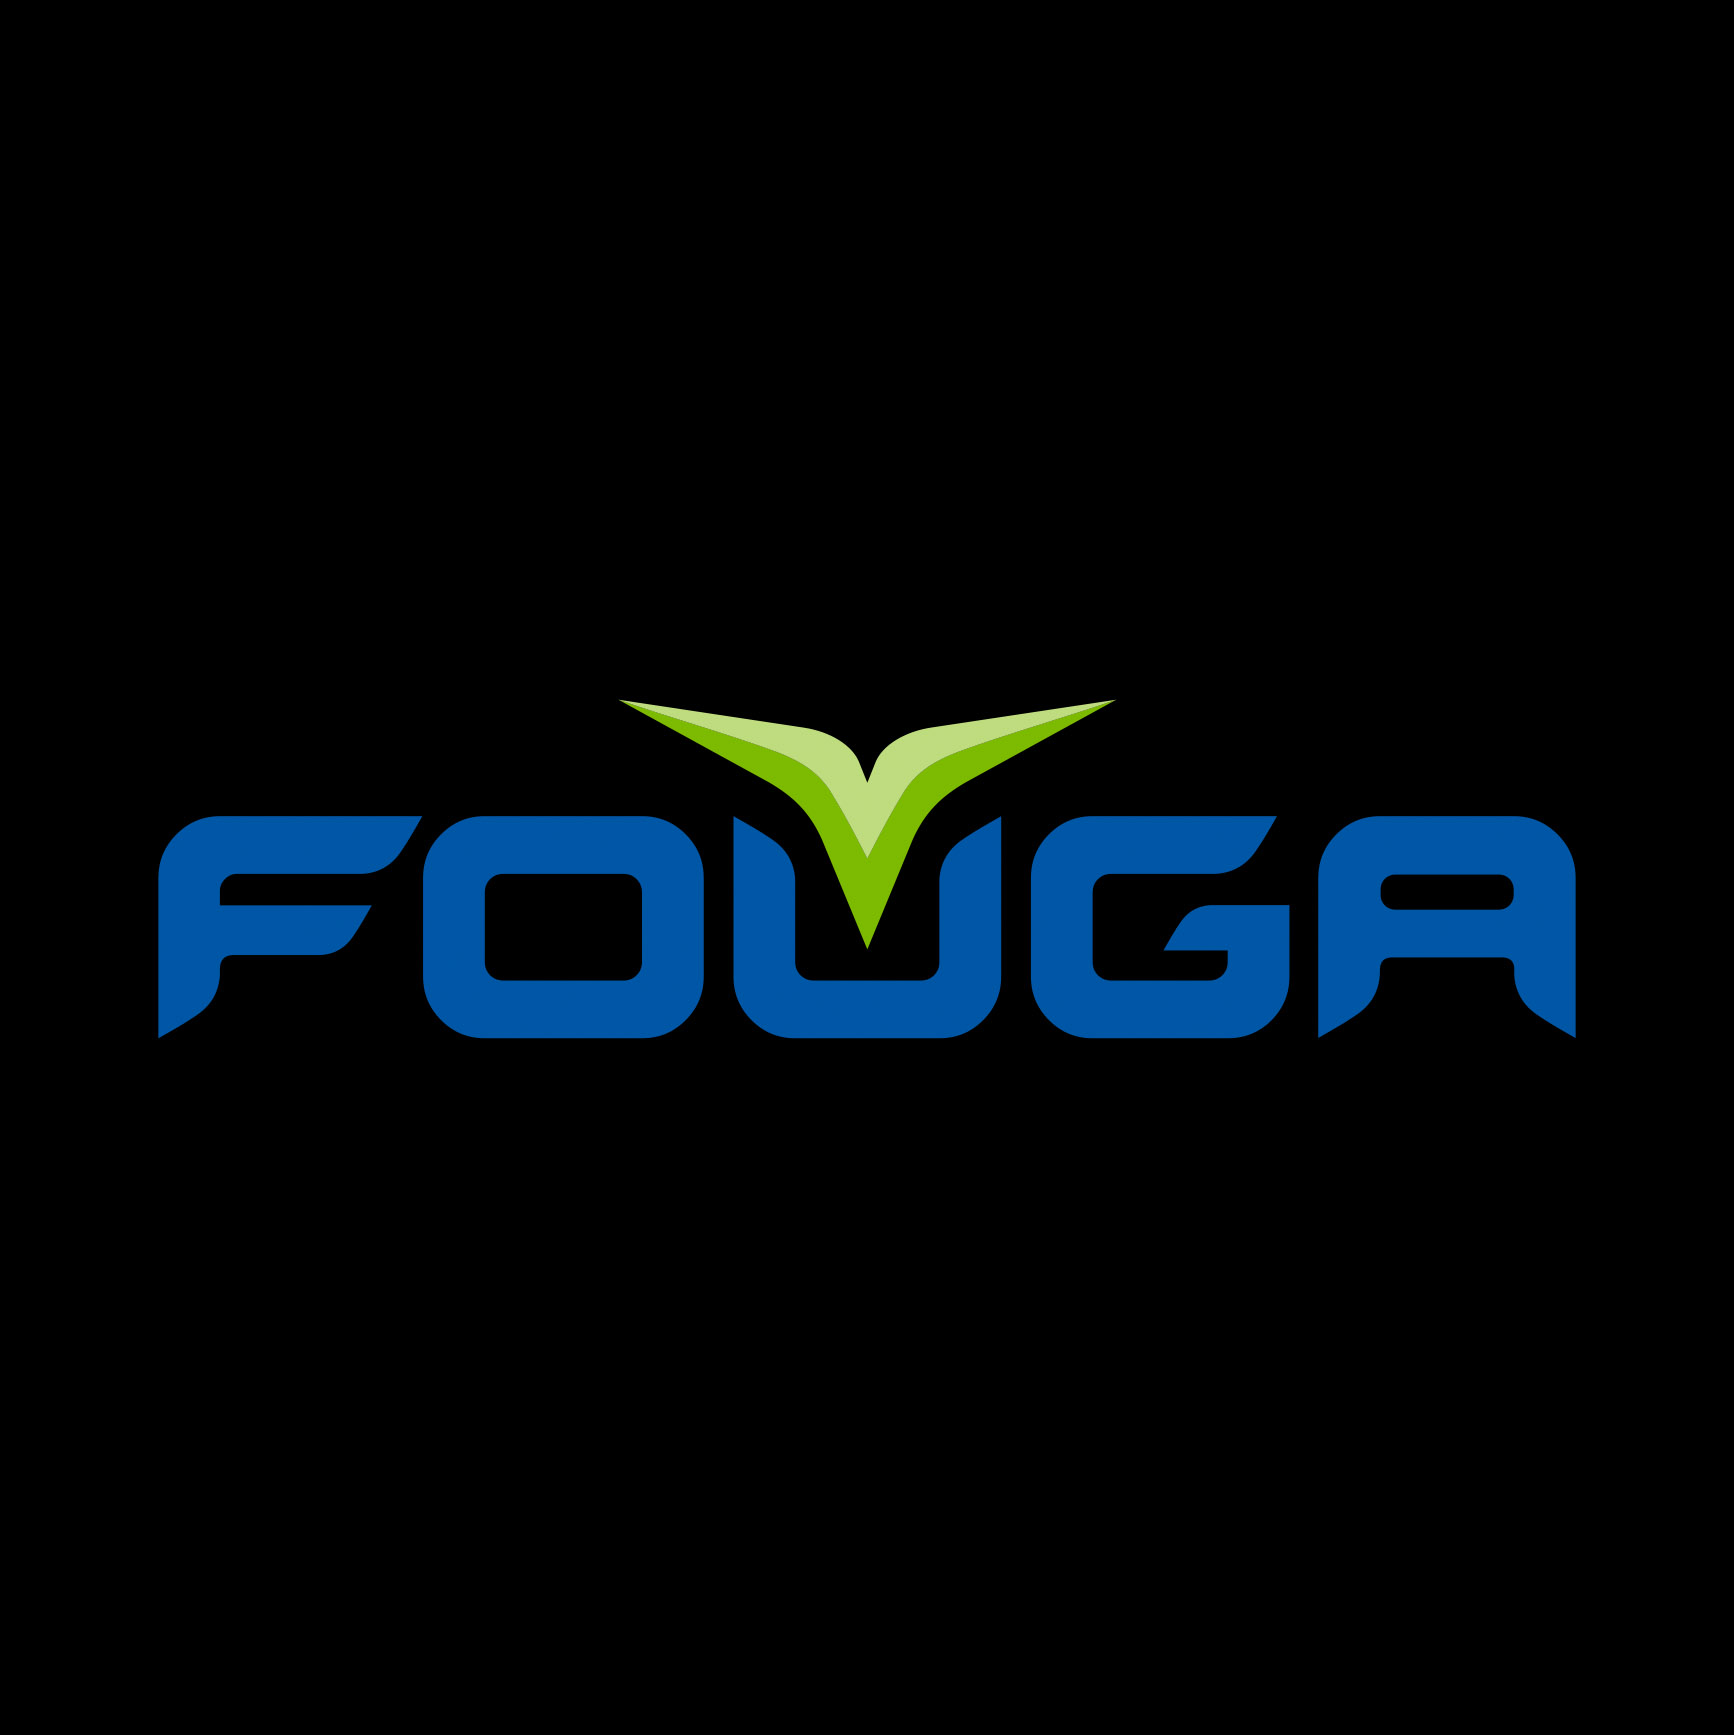 Fouga logo, Therwiz Design, Mika Tervaskangas logonsuunnittelu, yritysilme, liikemerkki Pietarsaari, Pohjanmaa, Suomi